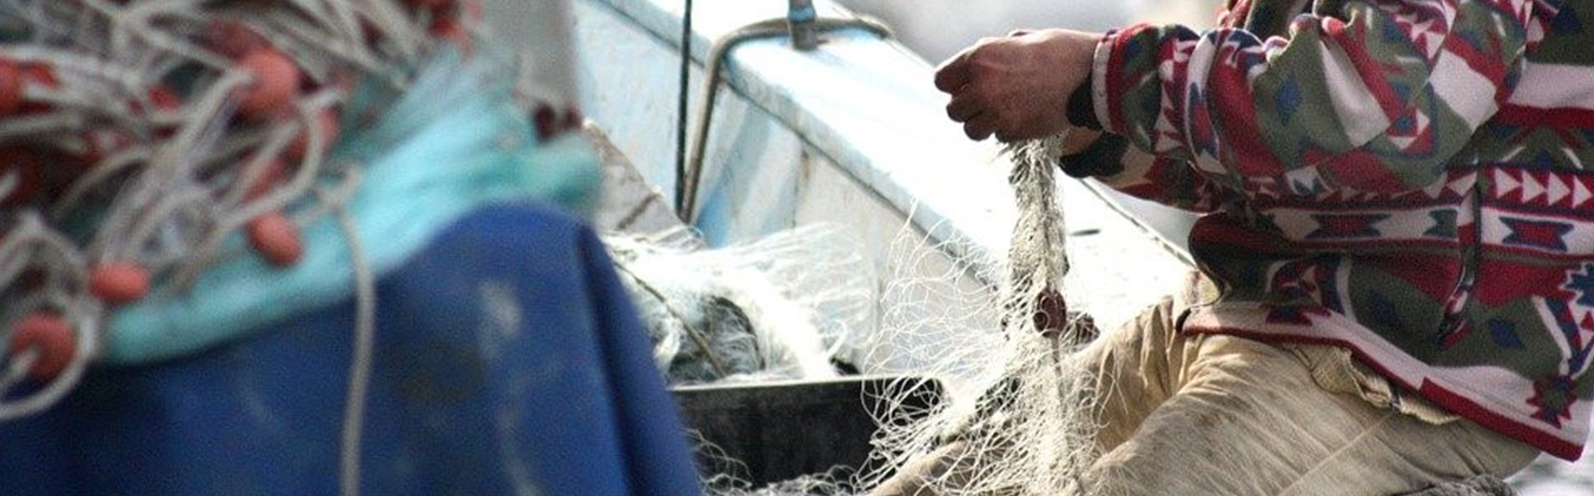 Nota de prensa - El turismo marinero, una posible solución al declive del sector pesquero según la UMU